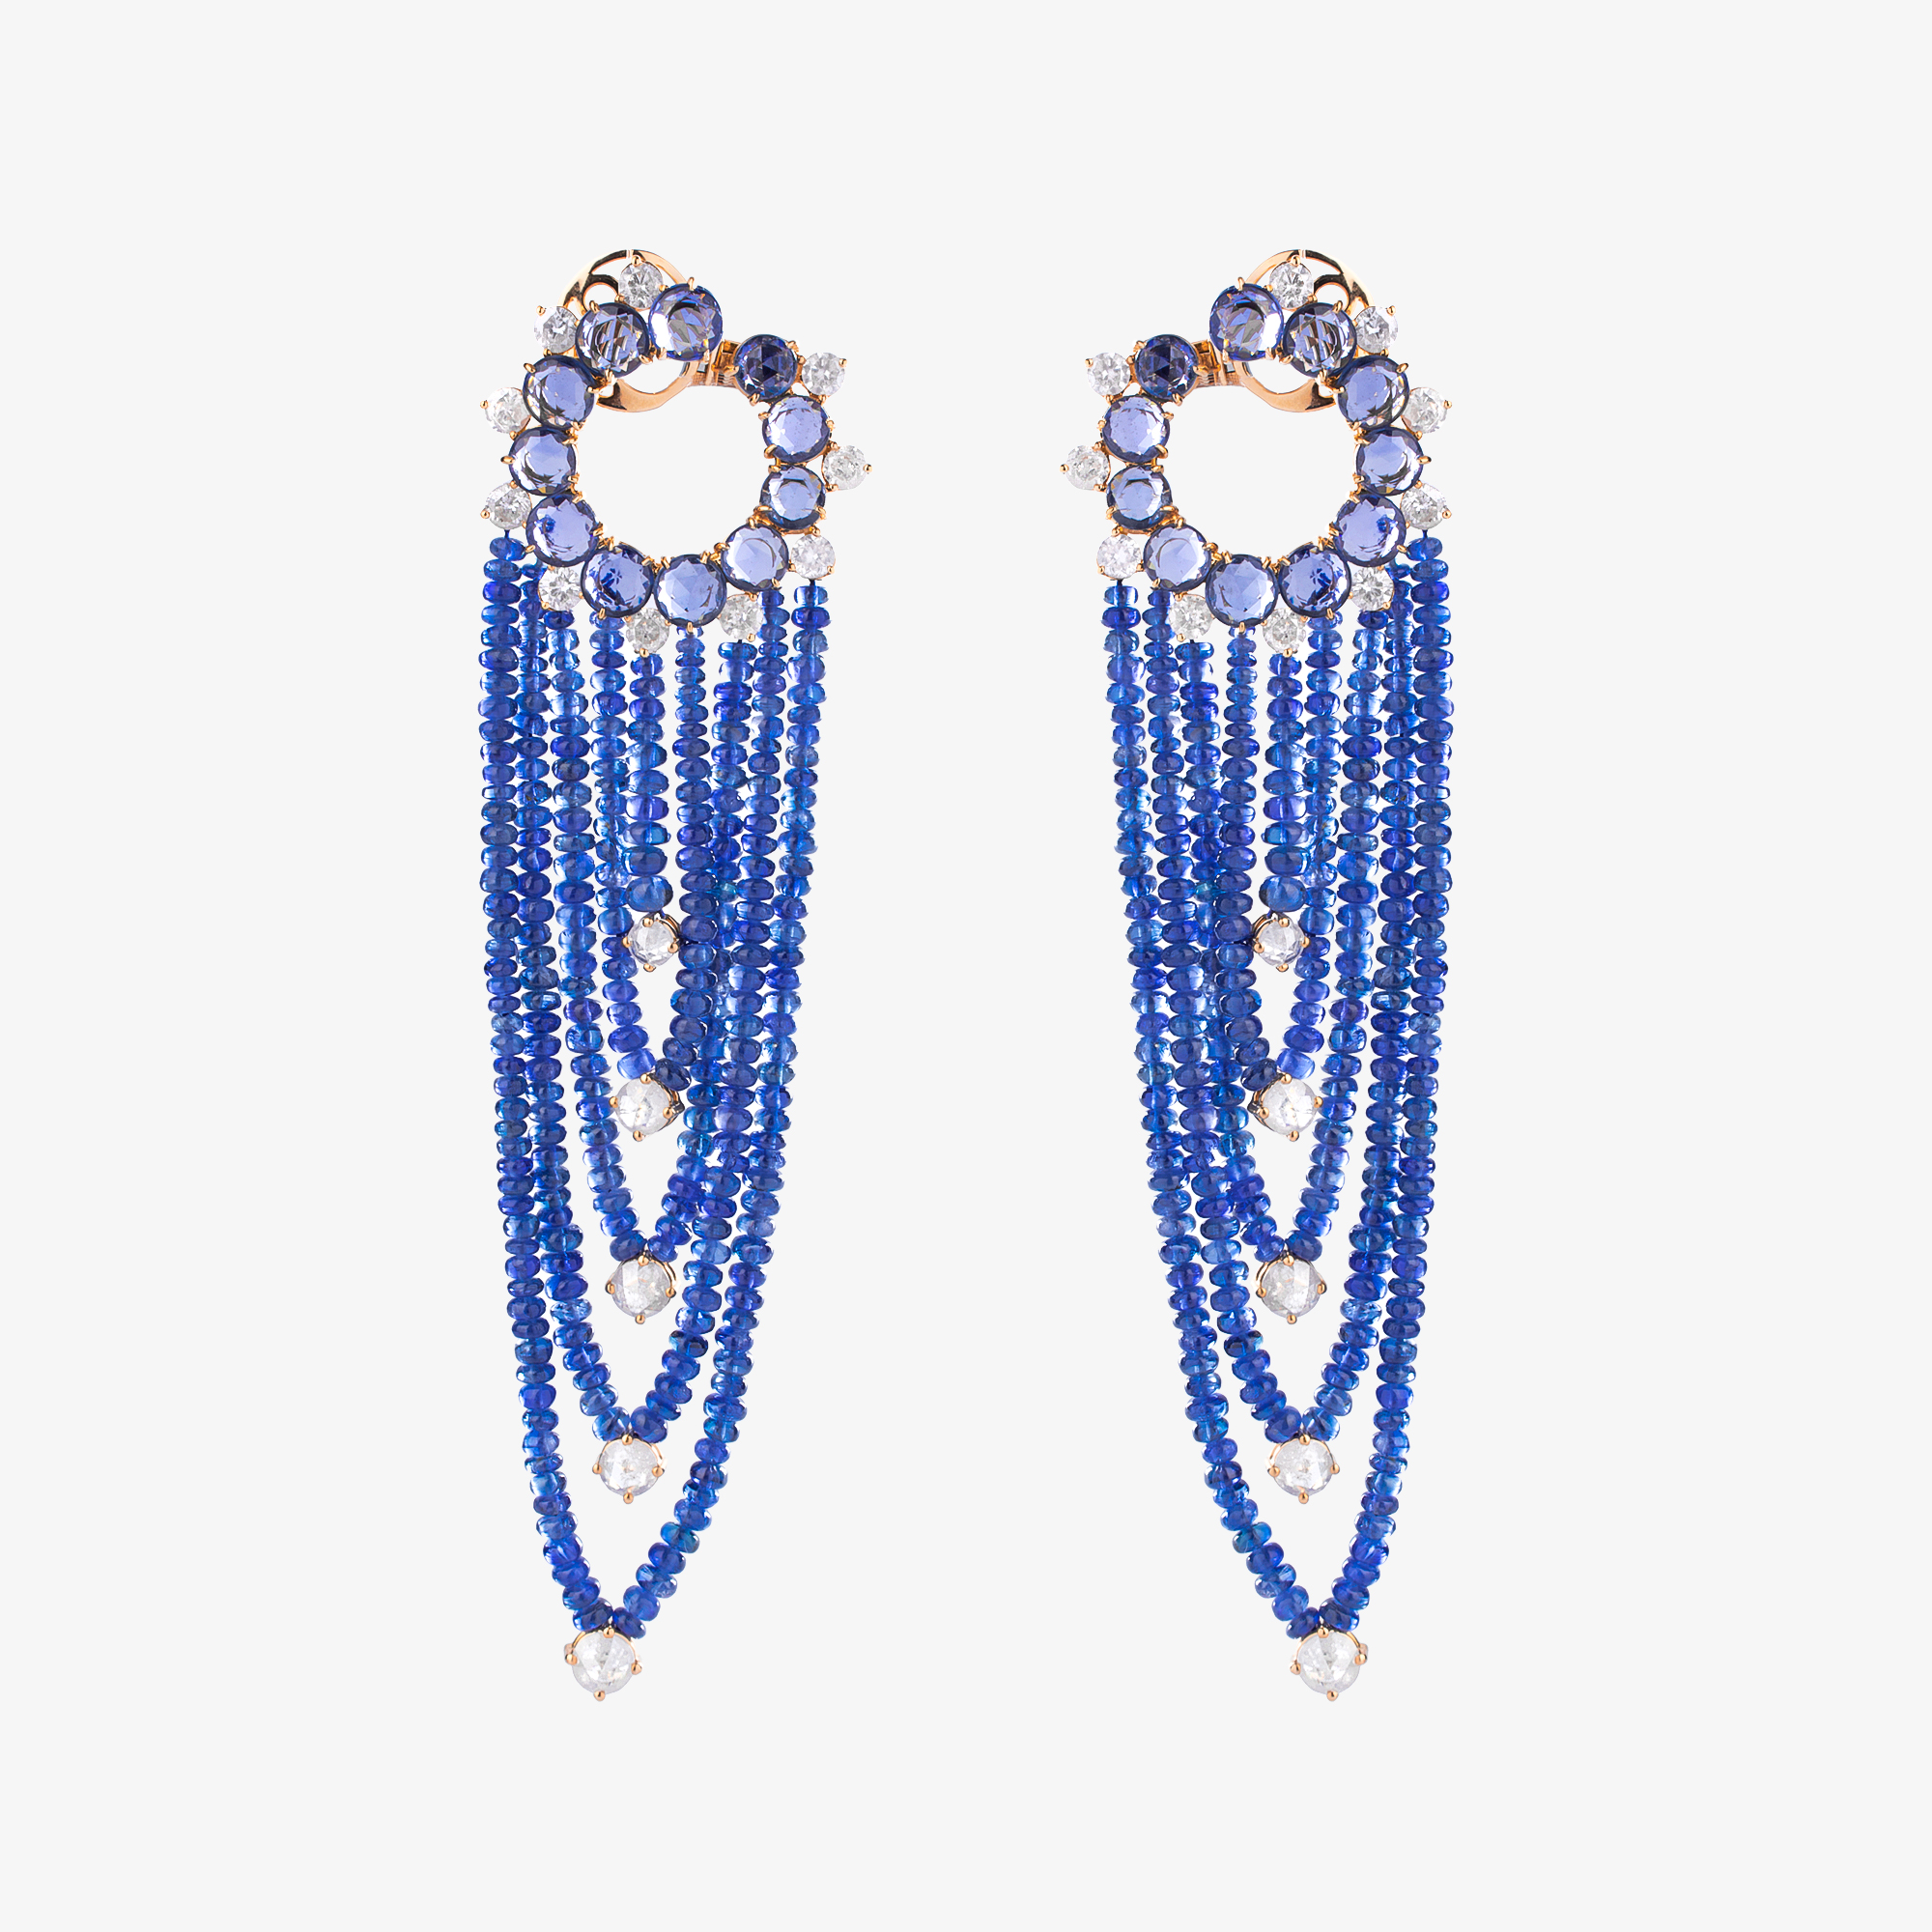 Outstanding Long Sapphire And Diamond Earrings Venetia Vildiridis E Shop